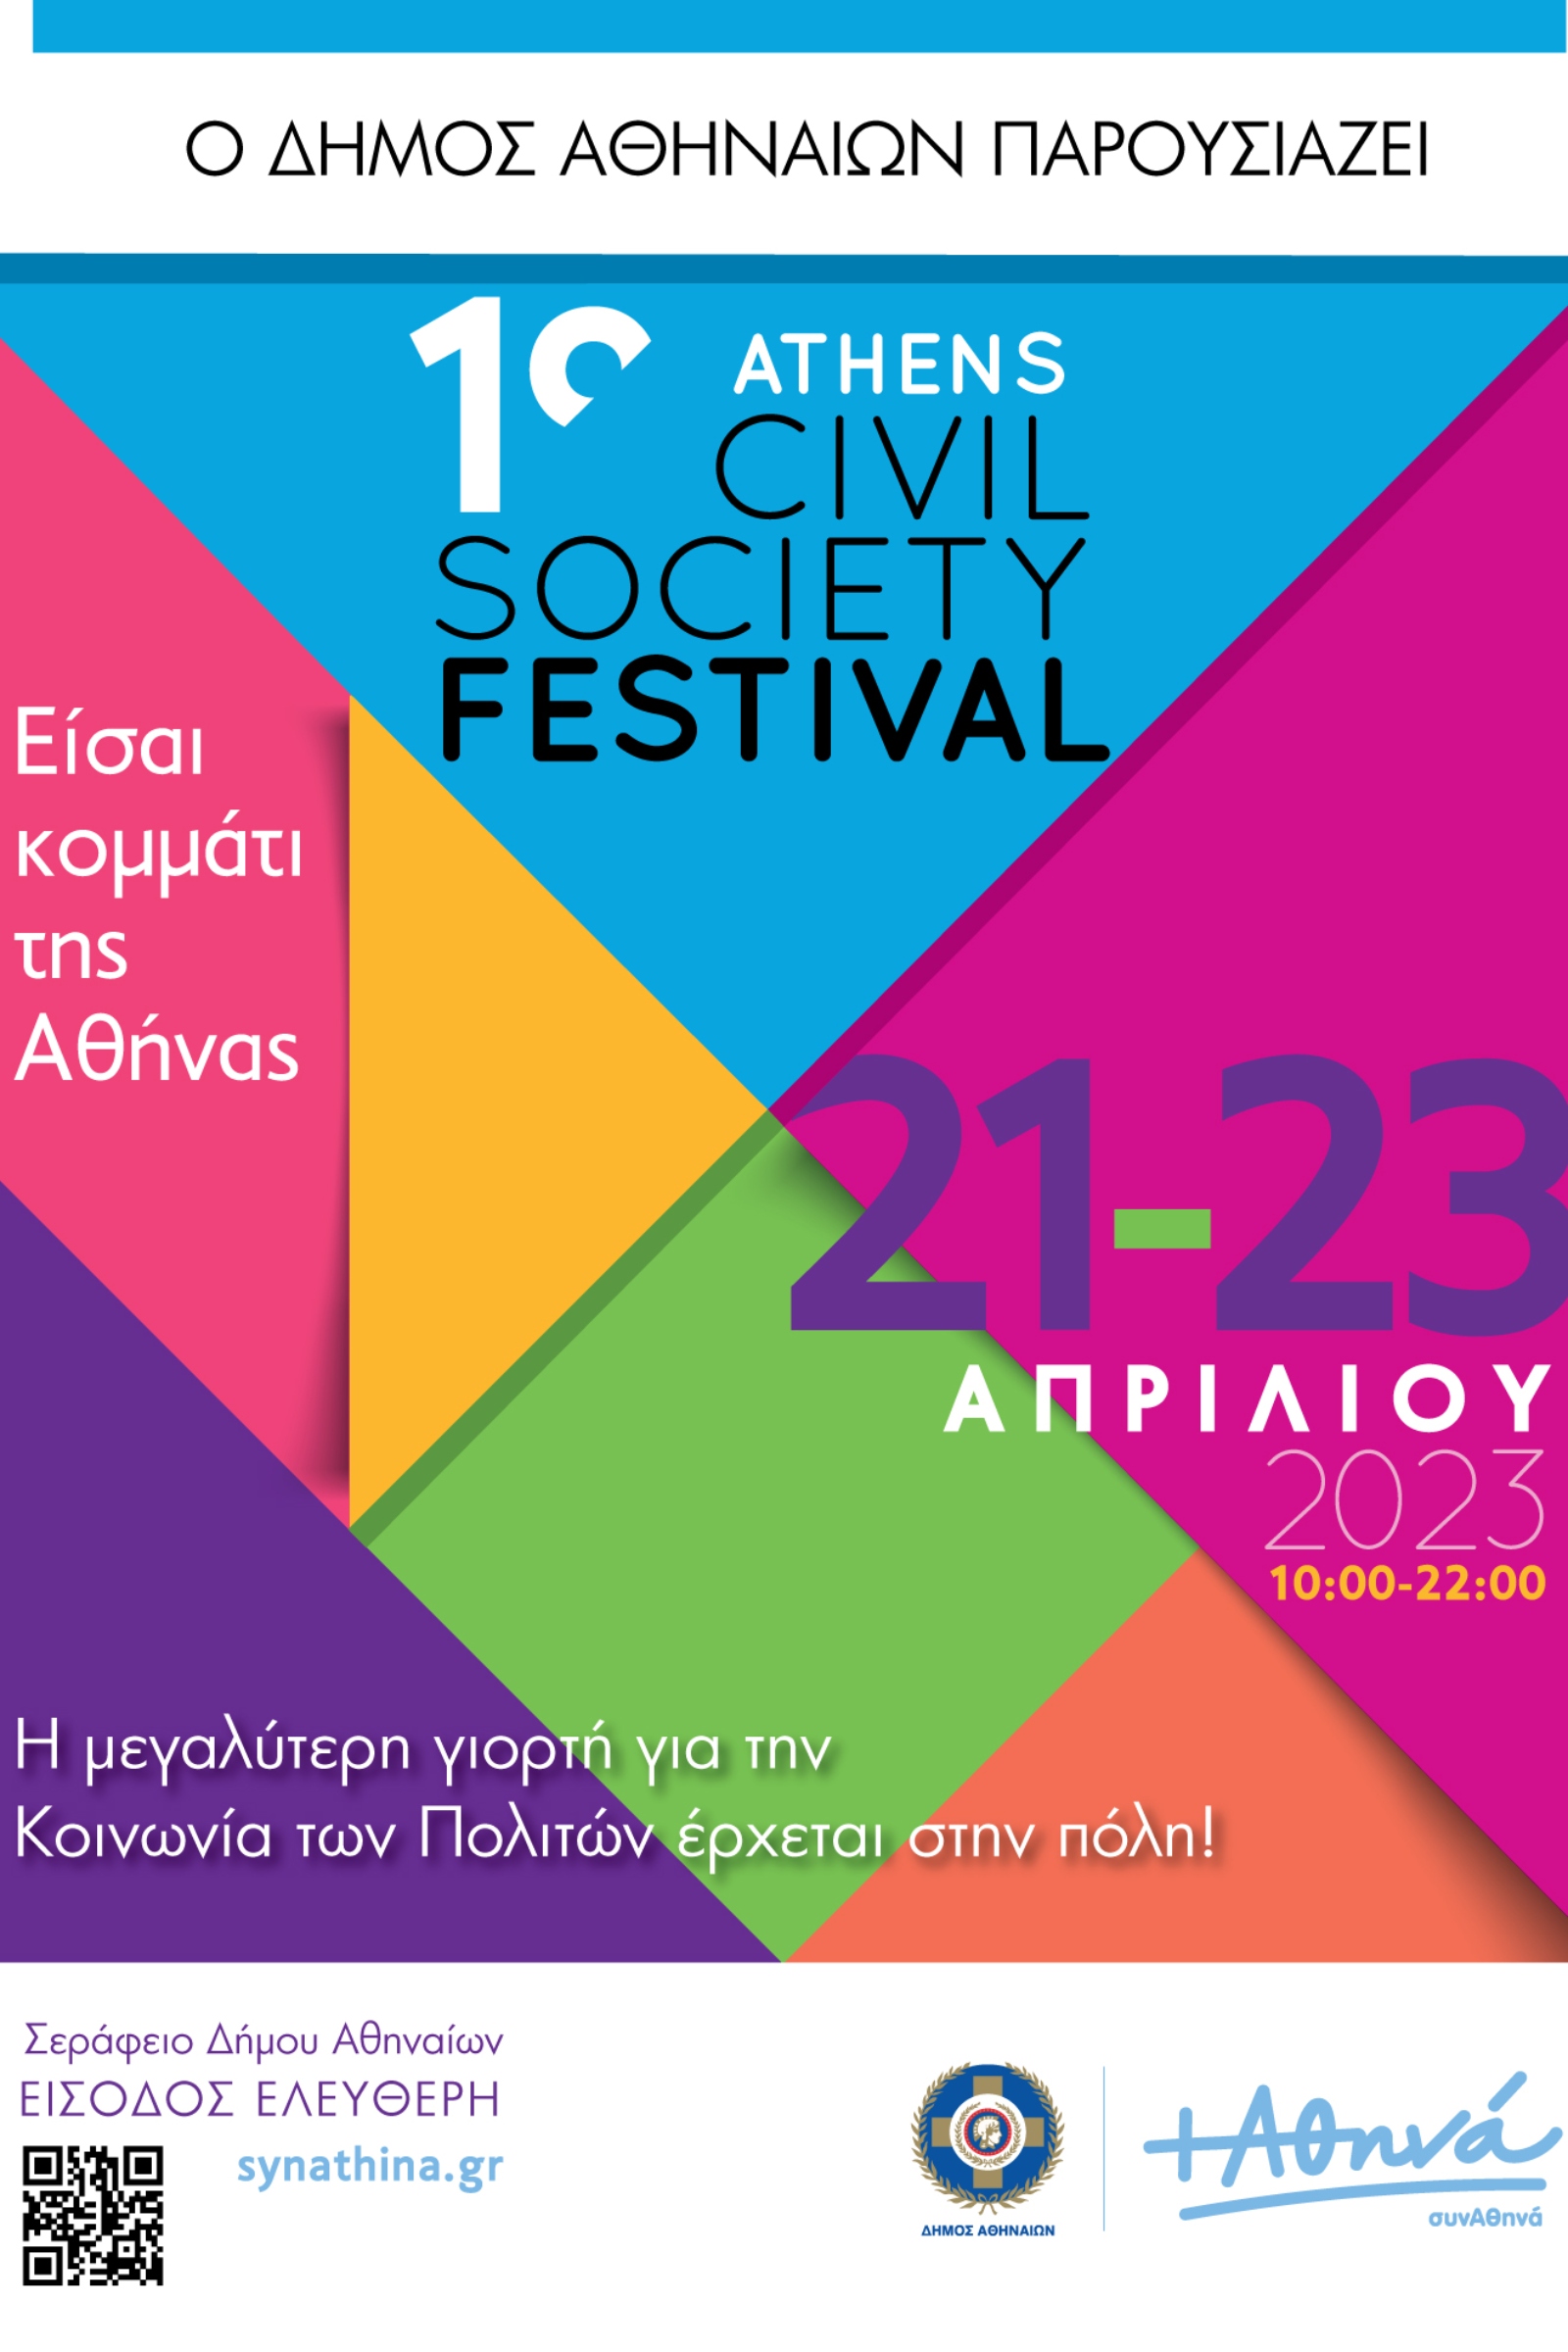 1ο Athens Civil Society Festival- Είσαι κομμάτι της Αθήνας!